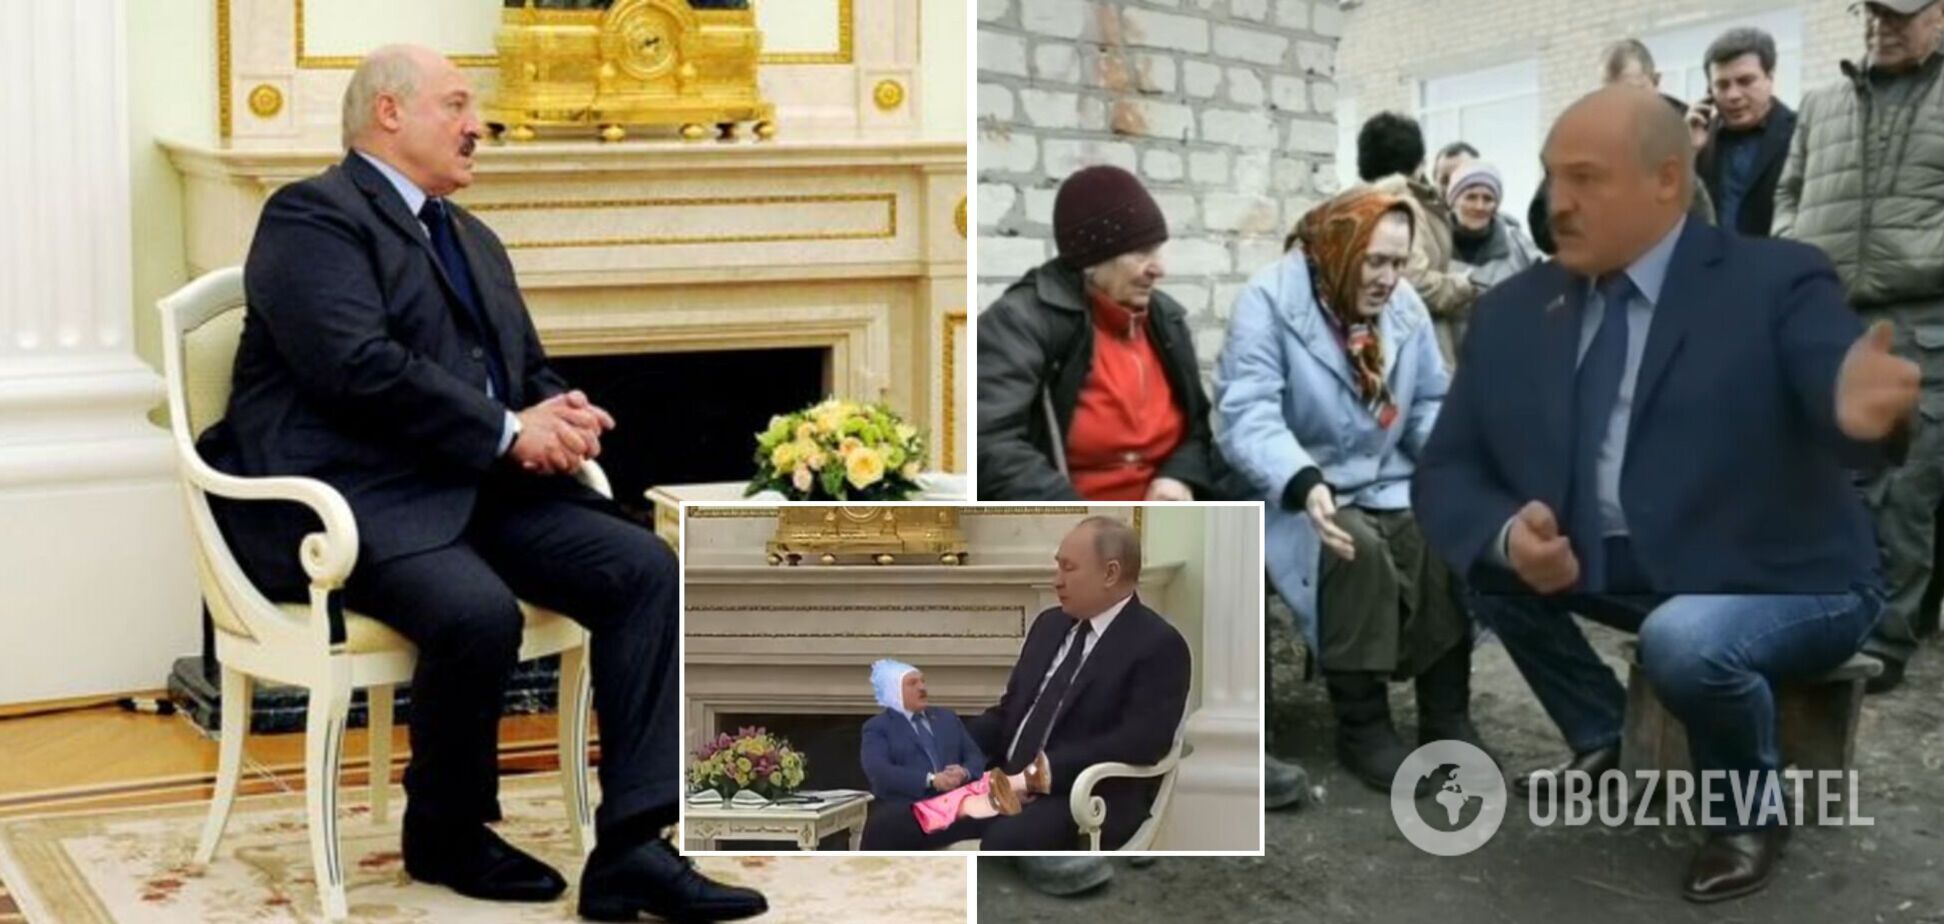 'А я вам сейчас покажу, откуда на Беларусь готовилось нападение': монолог Лукашенко стал новым мемом в сети